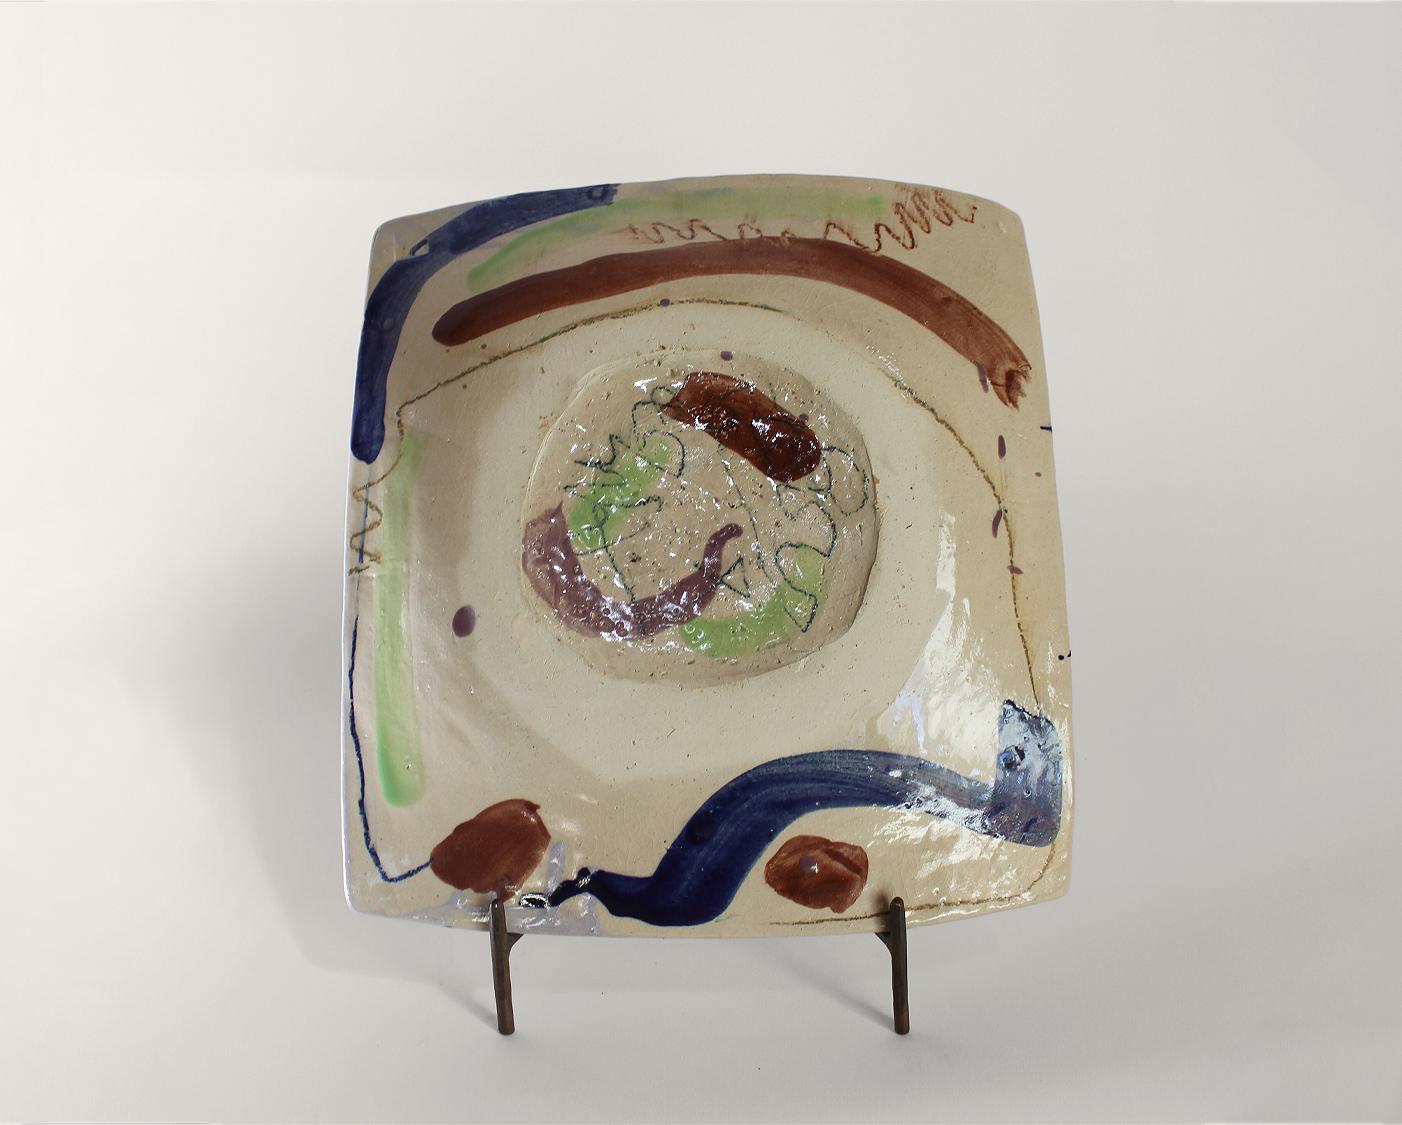 Terre sonore - Shun Kadohashi 

Bunte freie quadratische japanische Keramikplatte

27 x 30 x 5 cm
Sandstein
Hergestellt in Japan
Einzigartiges Stück
2023

Dieses Werk wird mit einem Echtheitszertifikat geliefert.

Shun Kadohashi ist ein japanischer